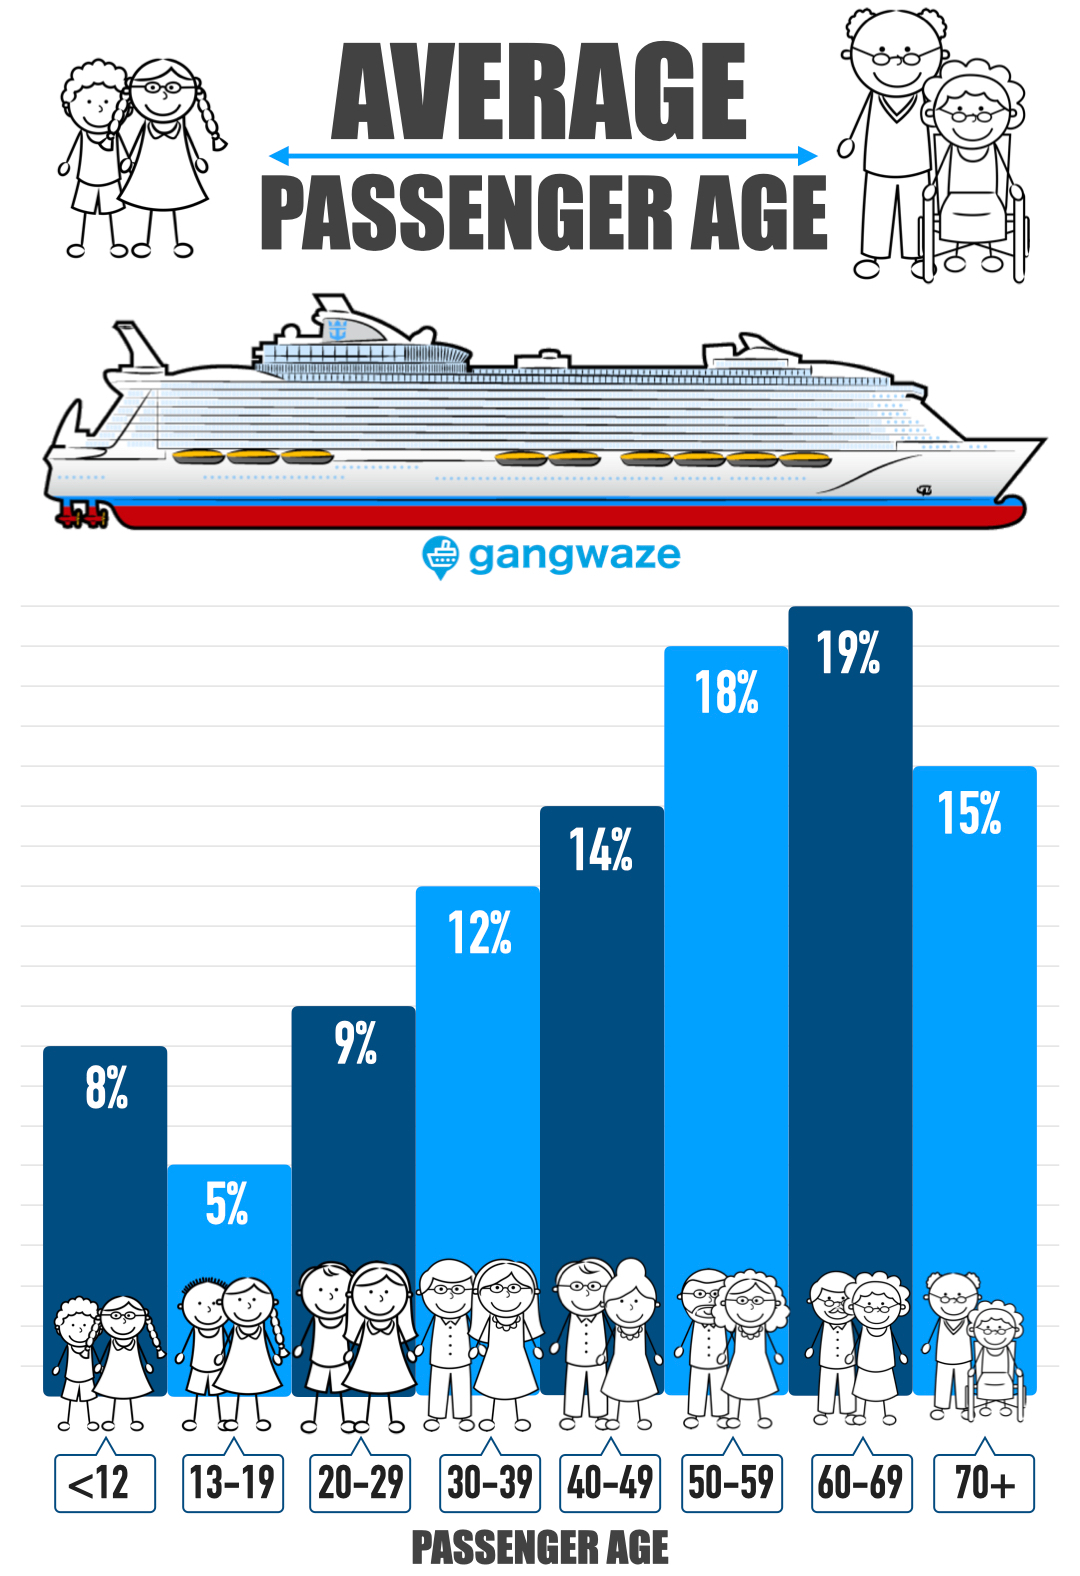 windstar cruises average age